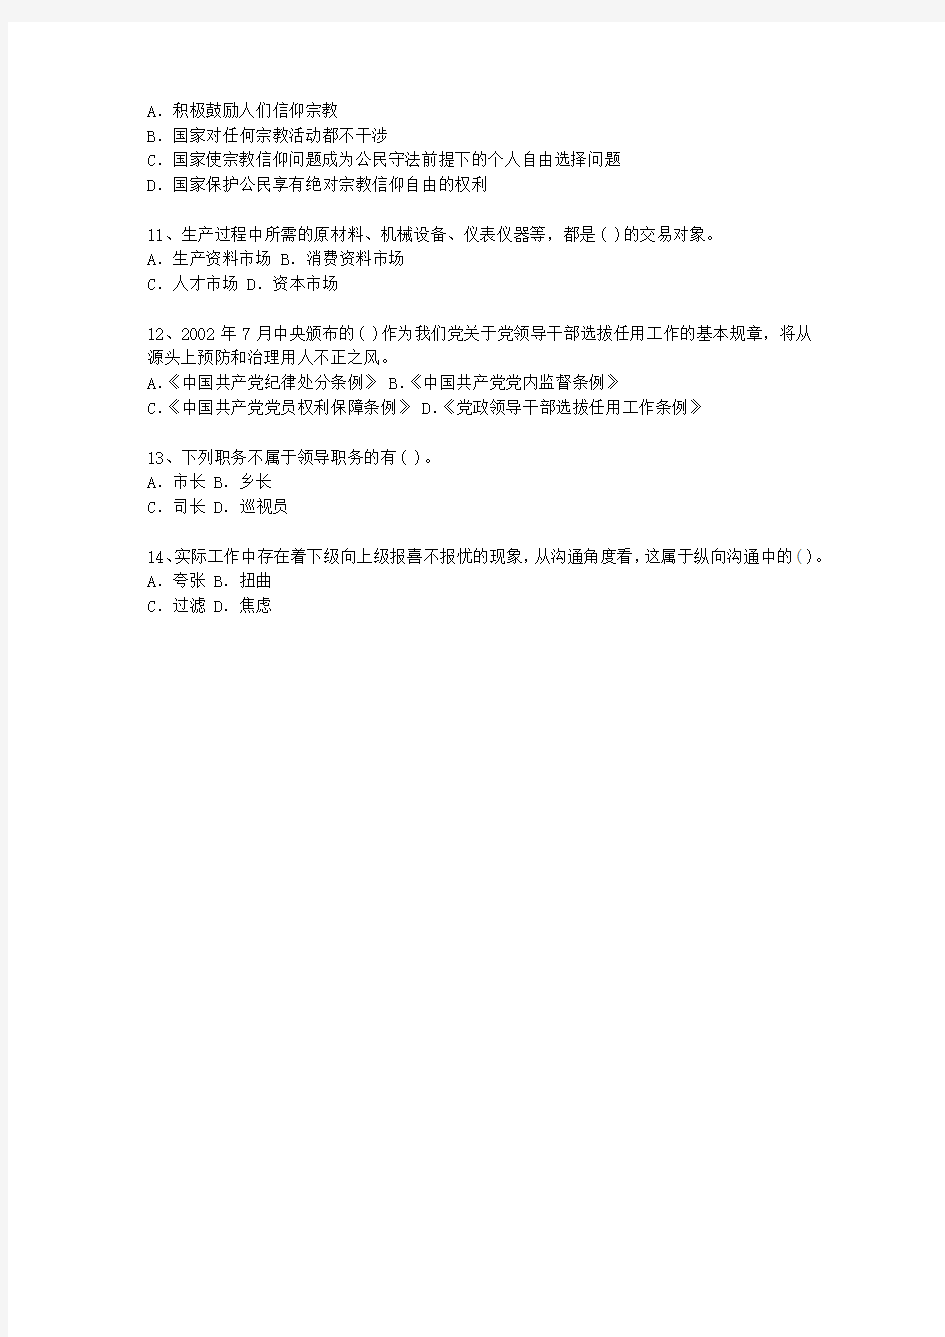 2013陕西省公开选拔党政副科级领导干部公共科目考试技巧、答题原则